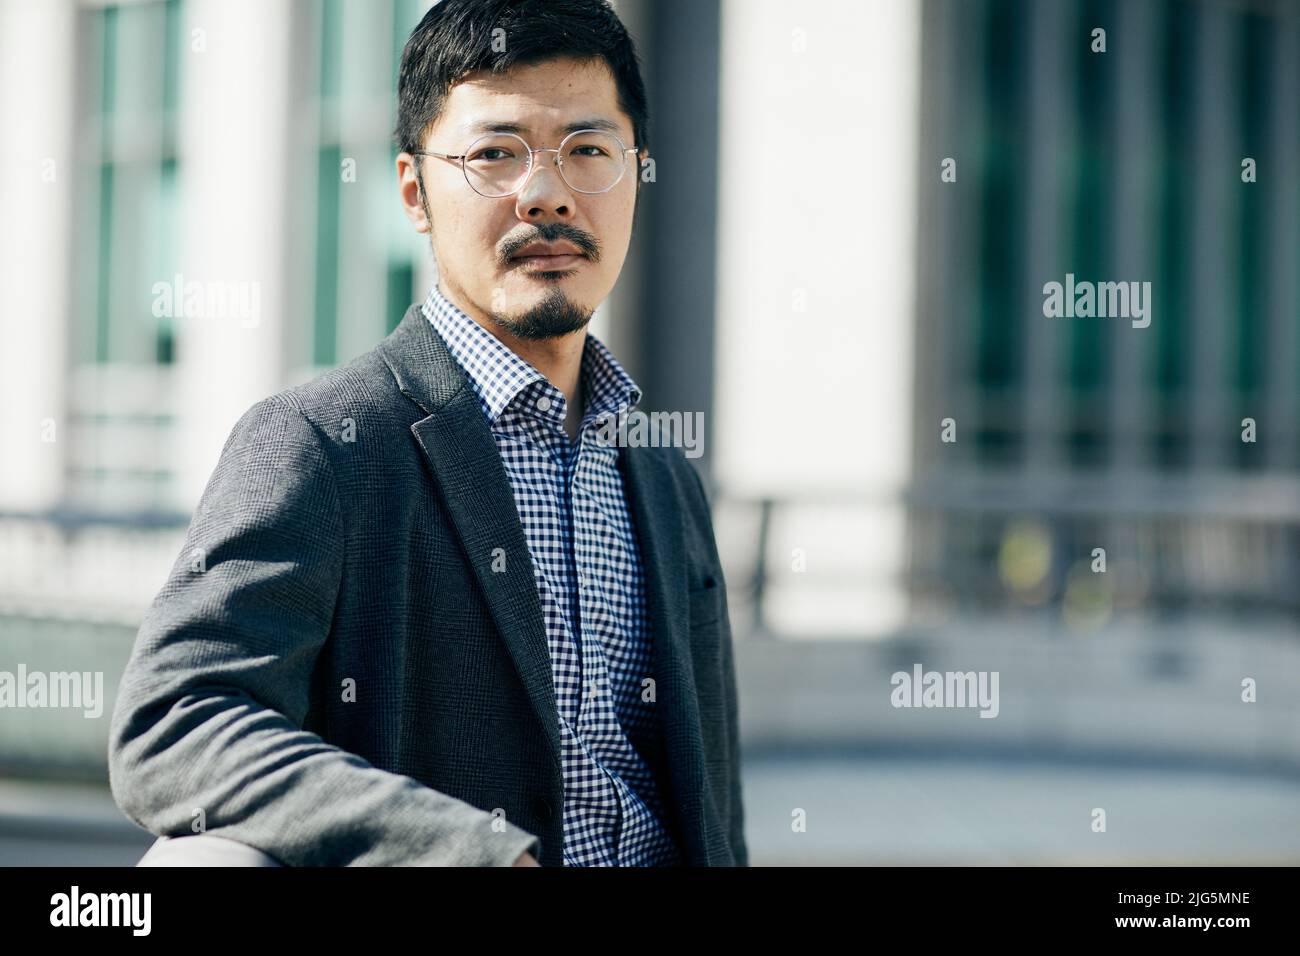 Retrato del hombre japonés Foto de stock